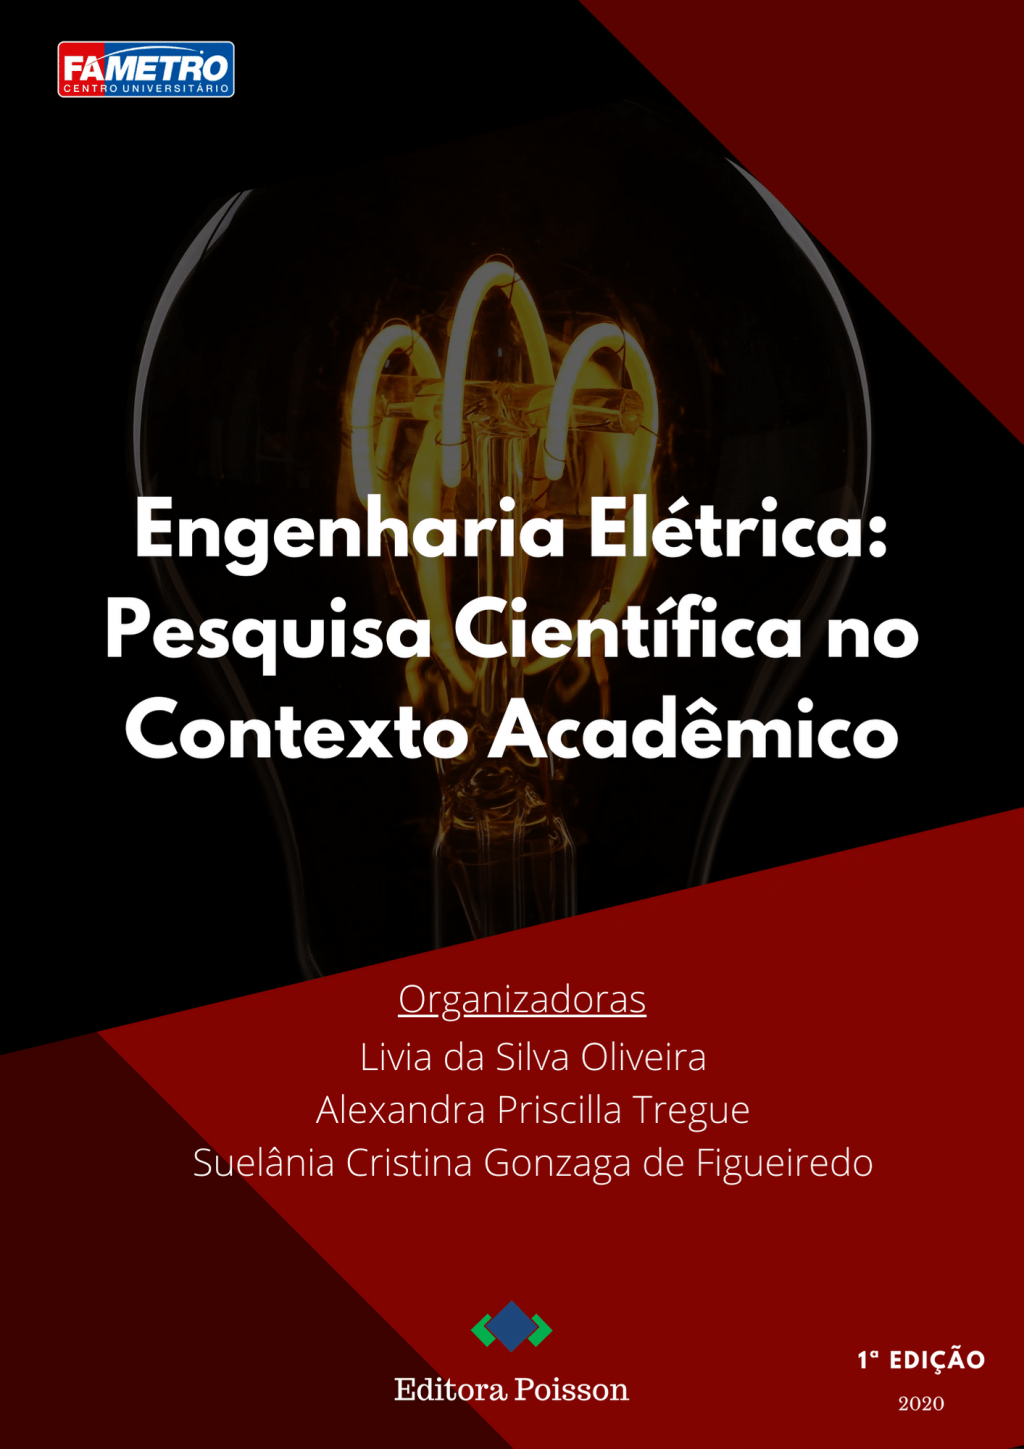 Engenharia Elétrica: Pesquisa Científica no Contexto Acadêmico